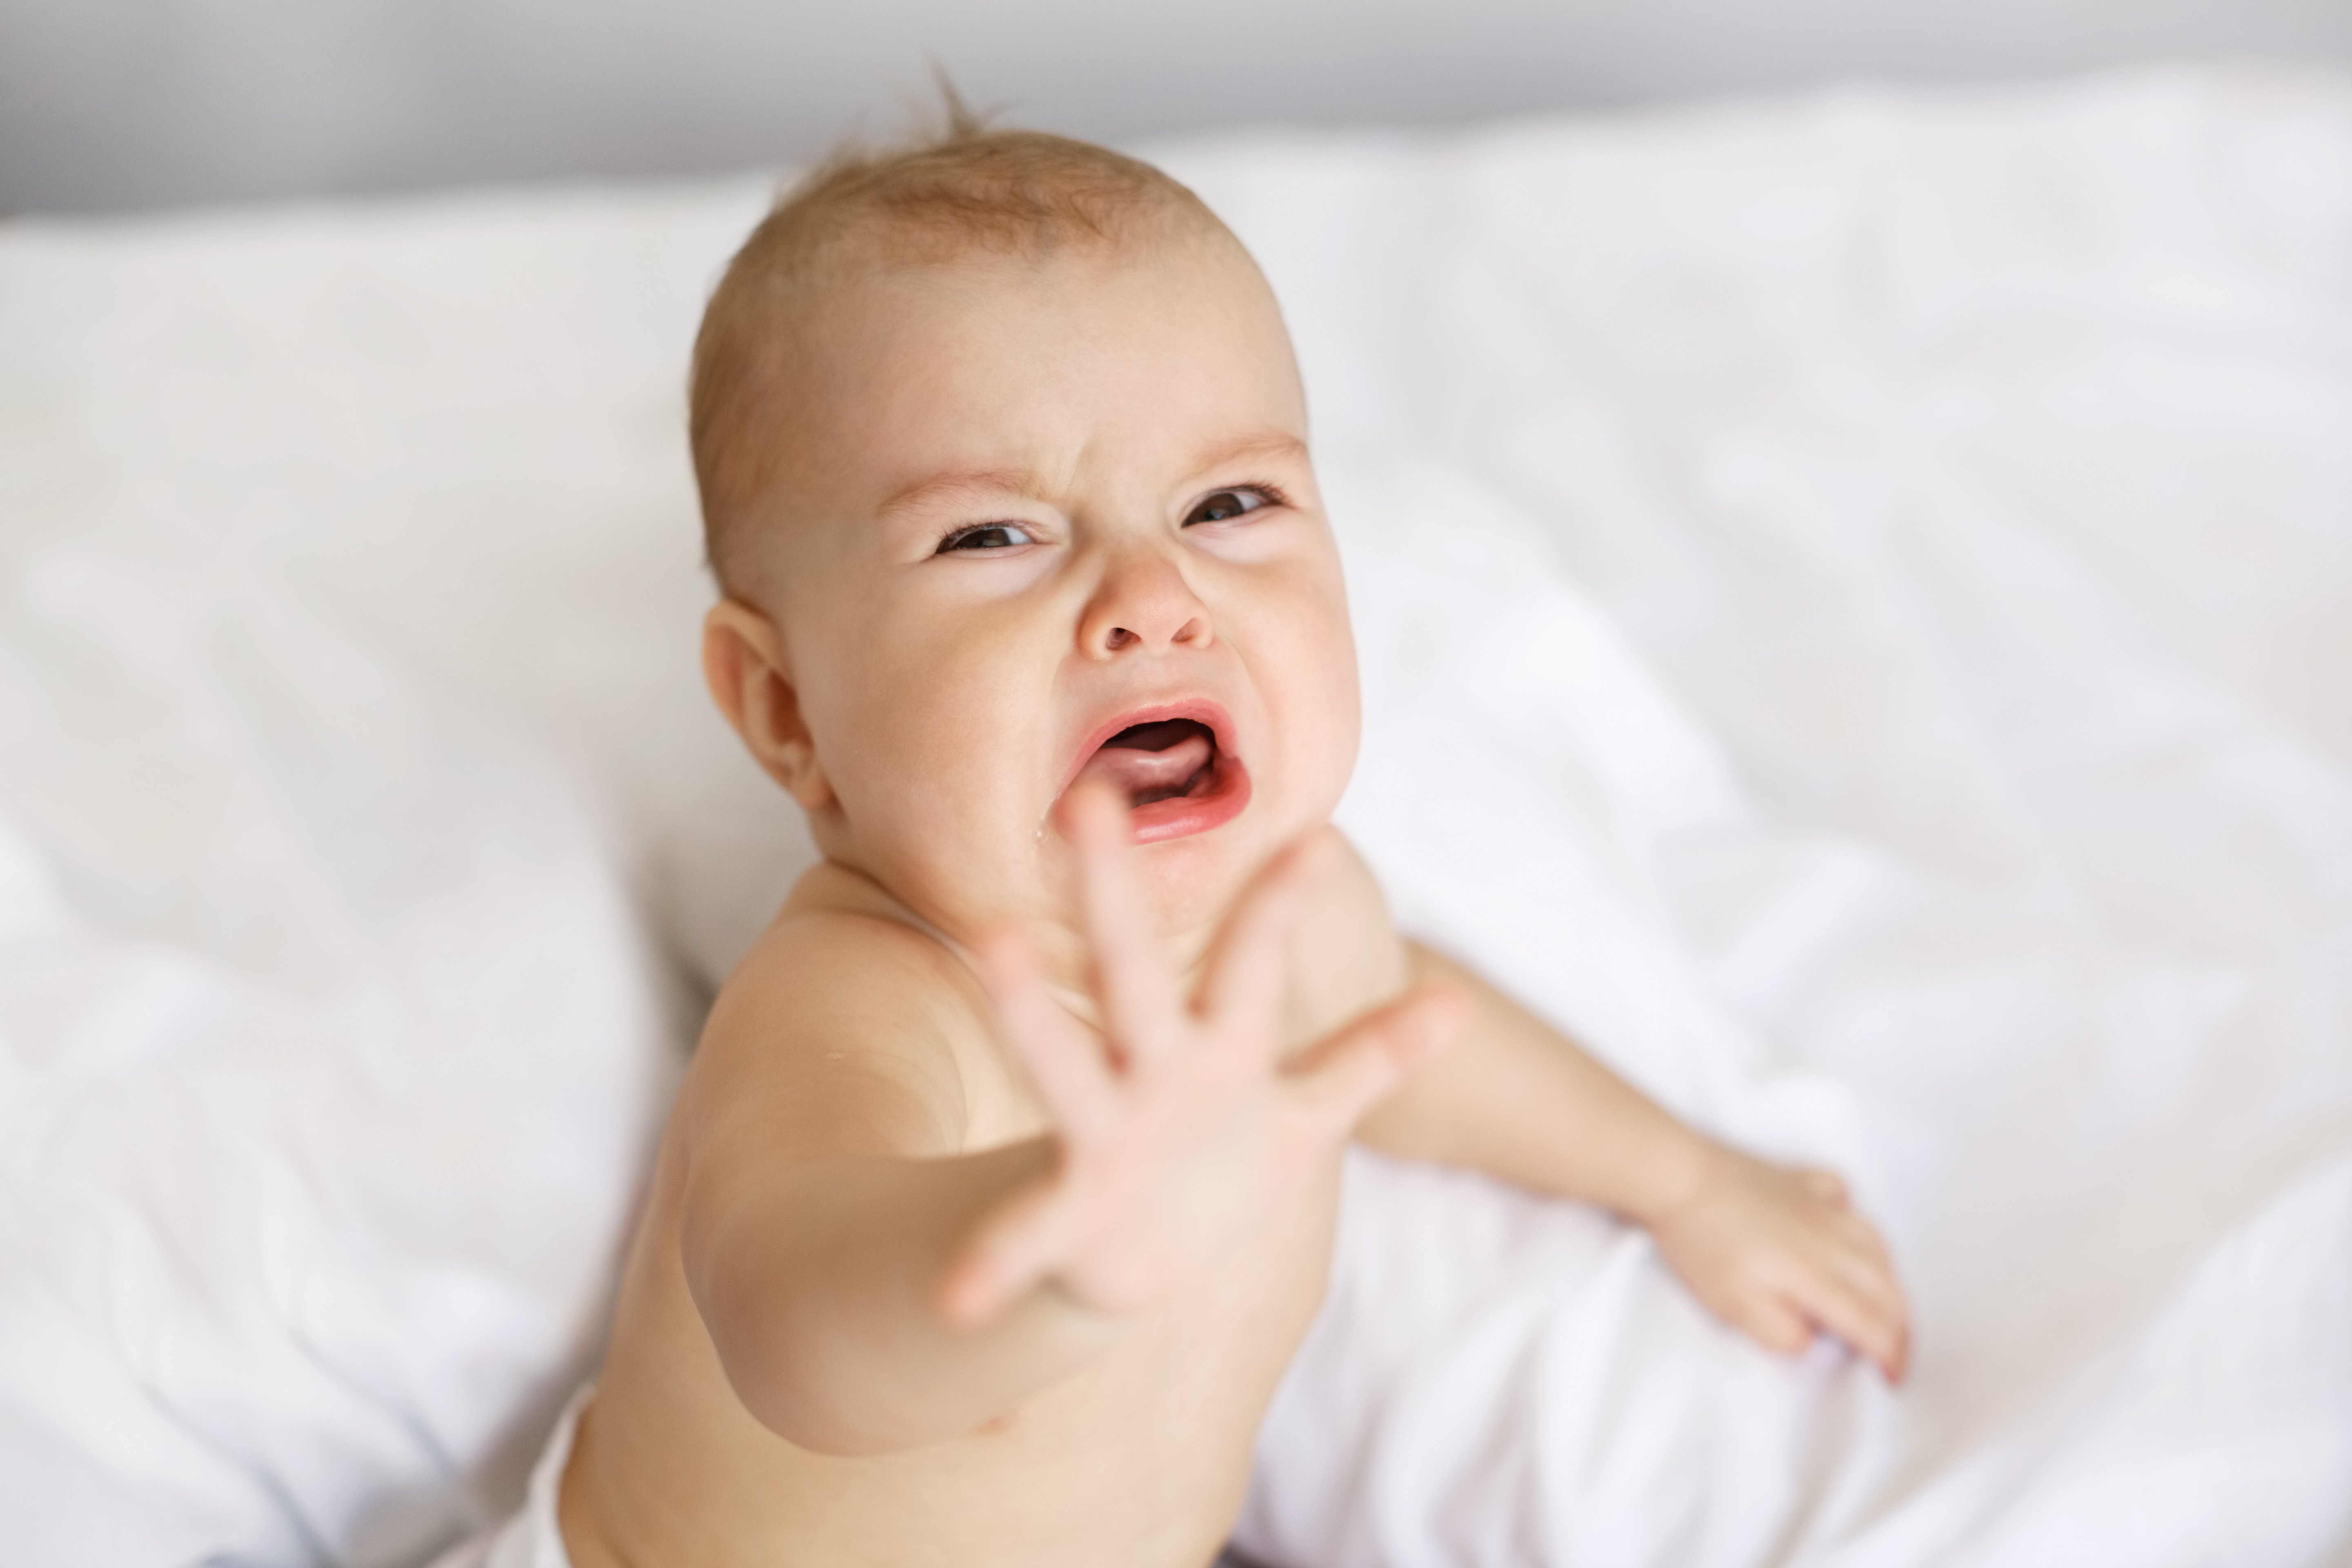 آتلیه کودک | زبان نوزاد | گریه نوزاد | معنی گریه نوزاد | دلیل گریه نوزاد | صدای گریه نوزاد